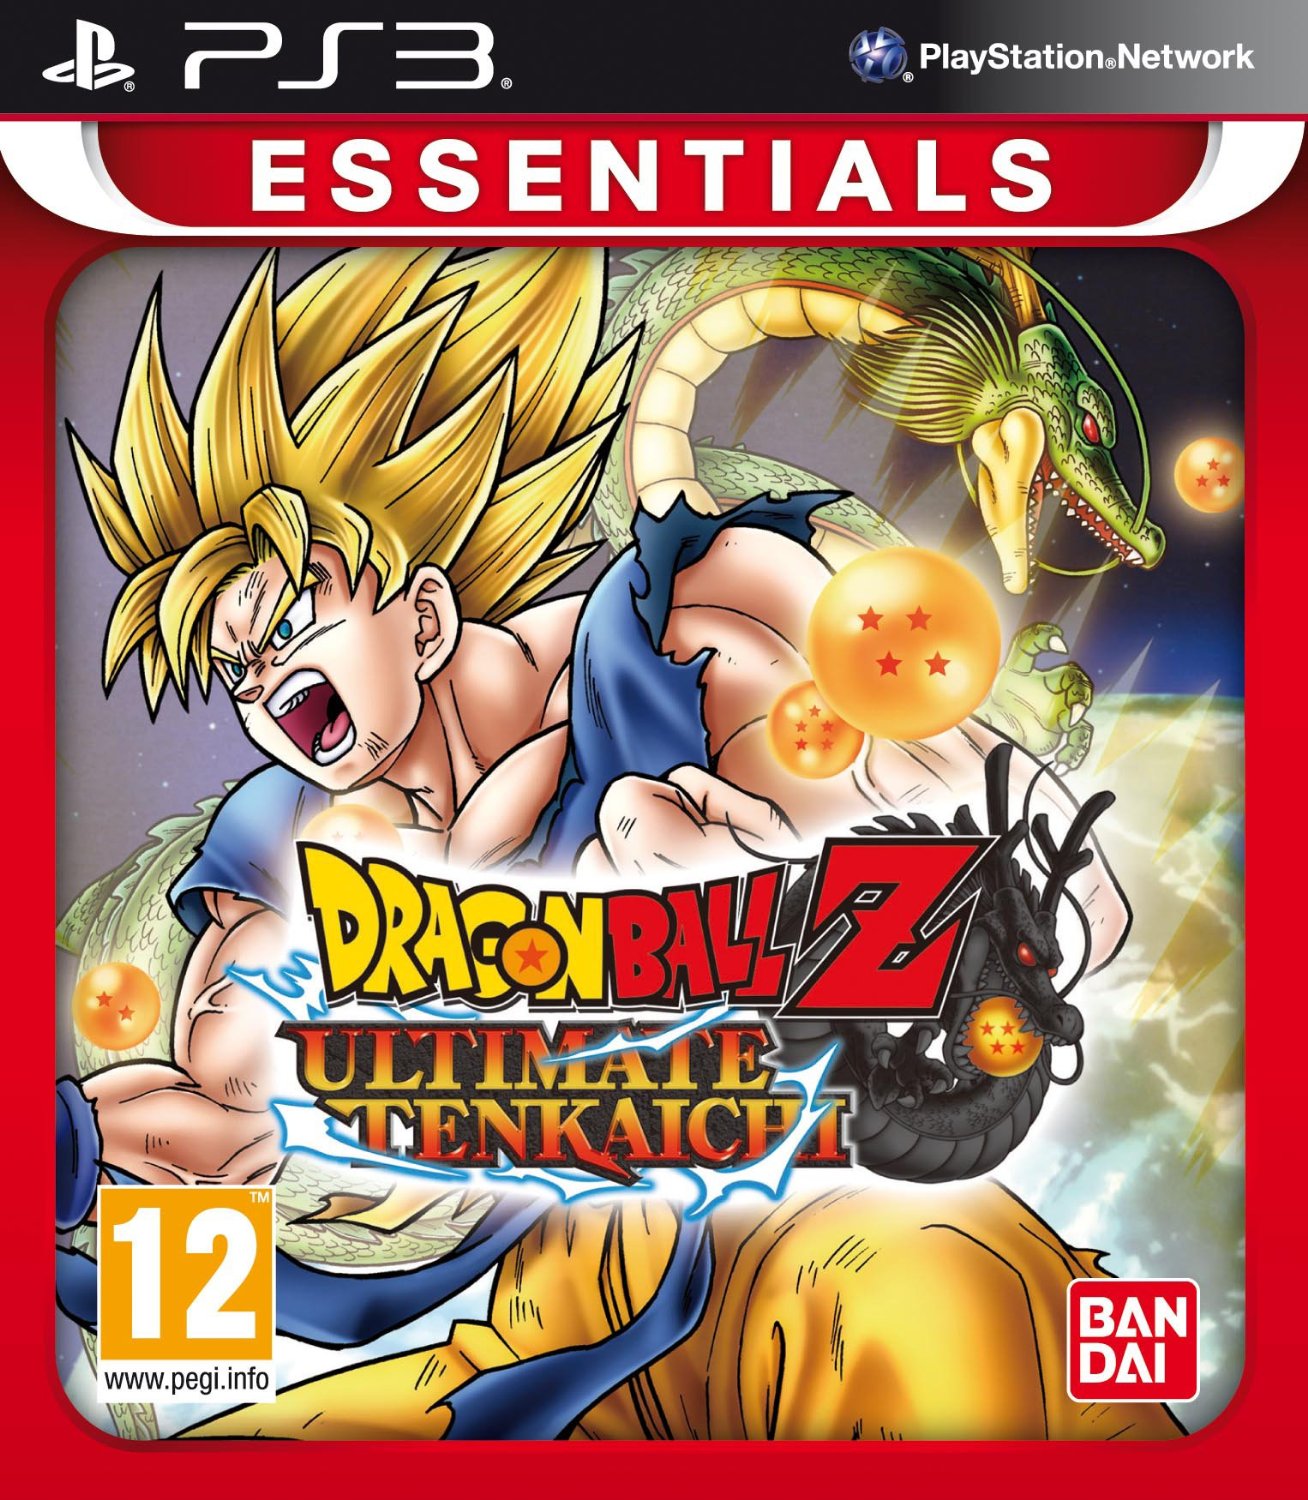 Osta Dragon Ball Z: Ultimate Tenkaichi (Essentials)